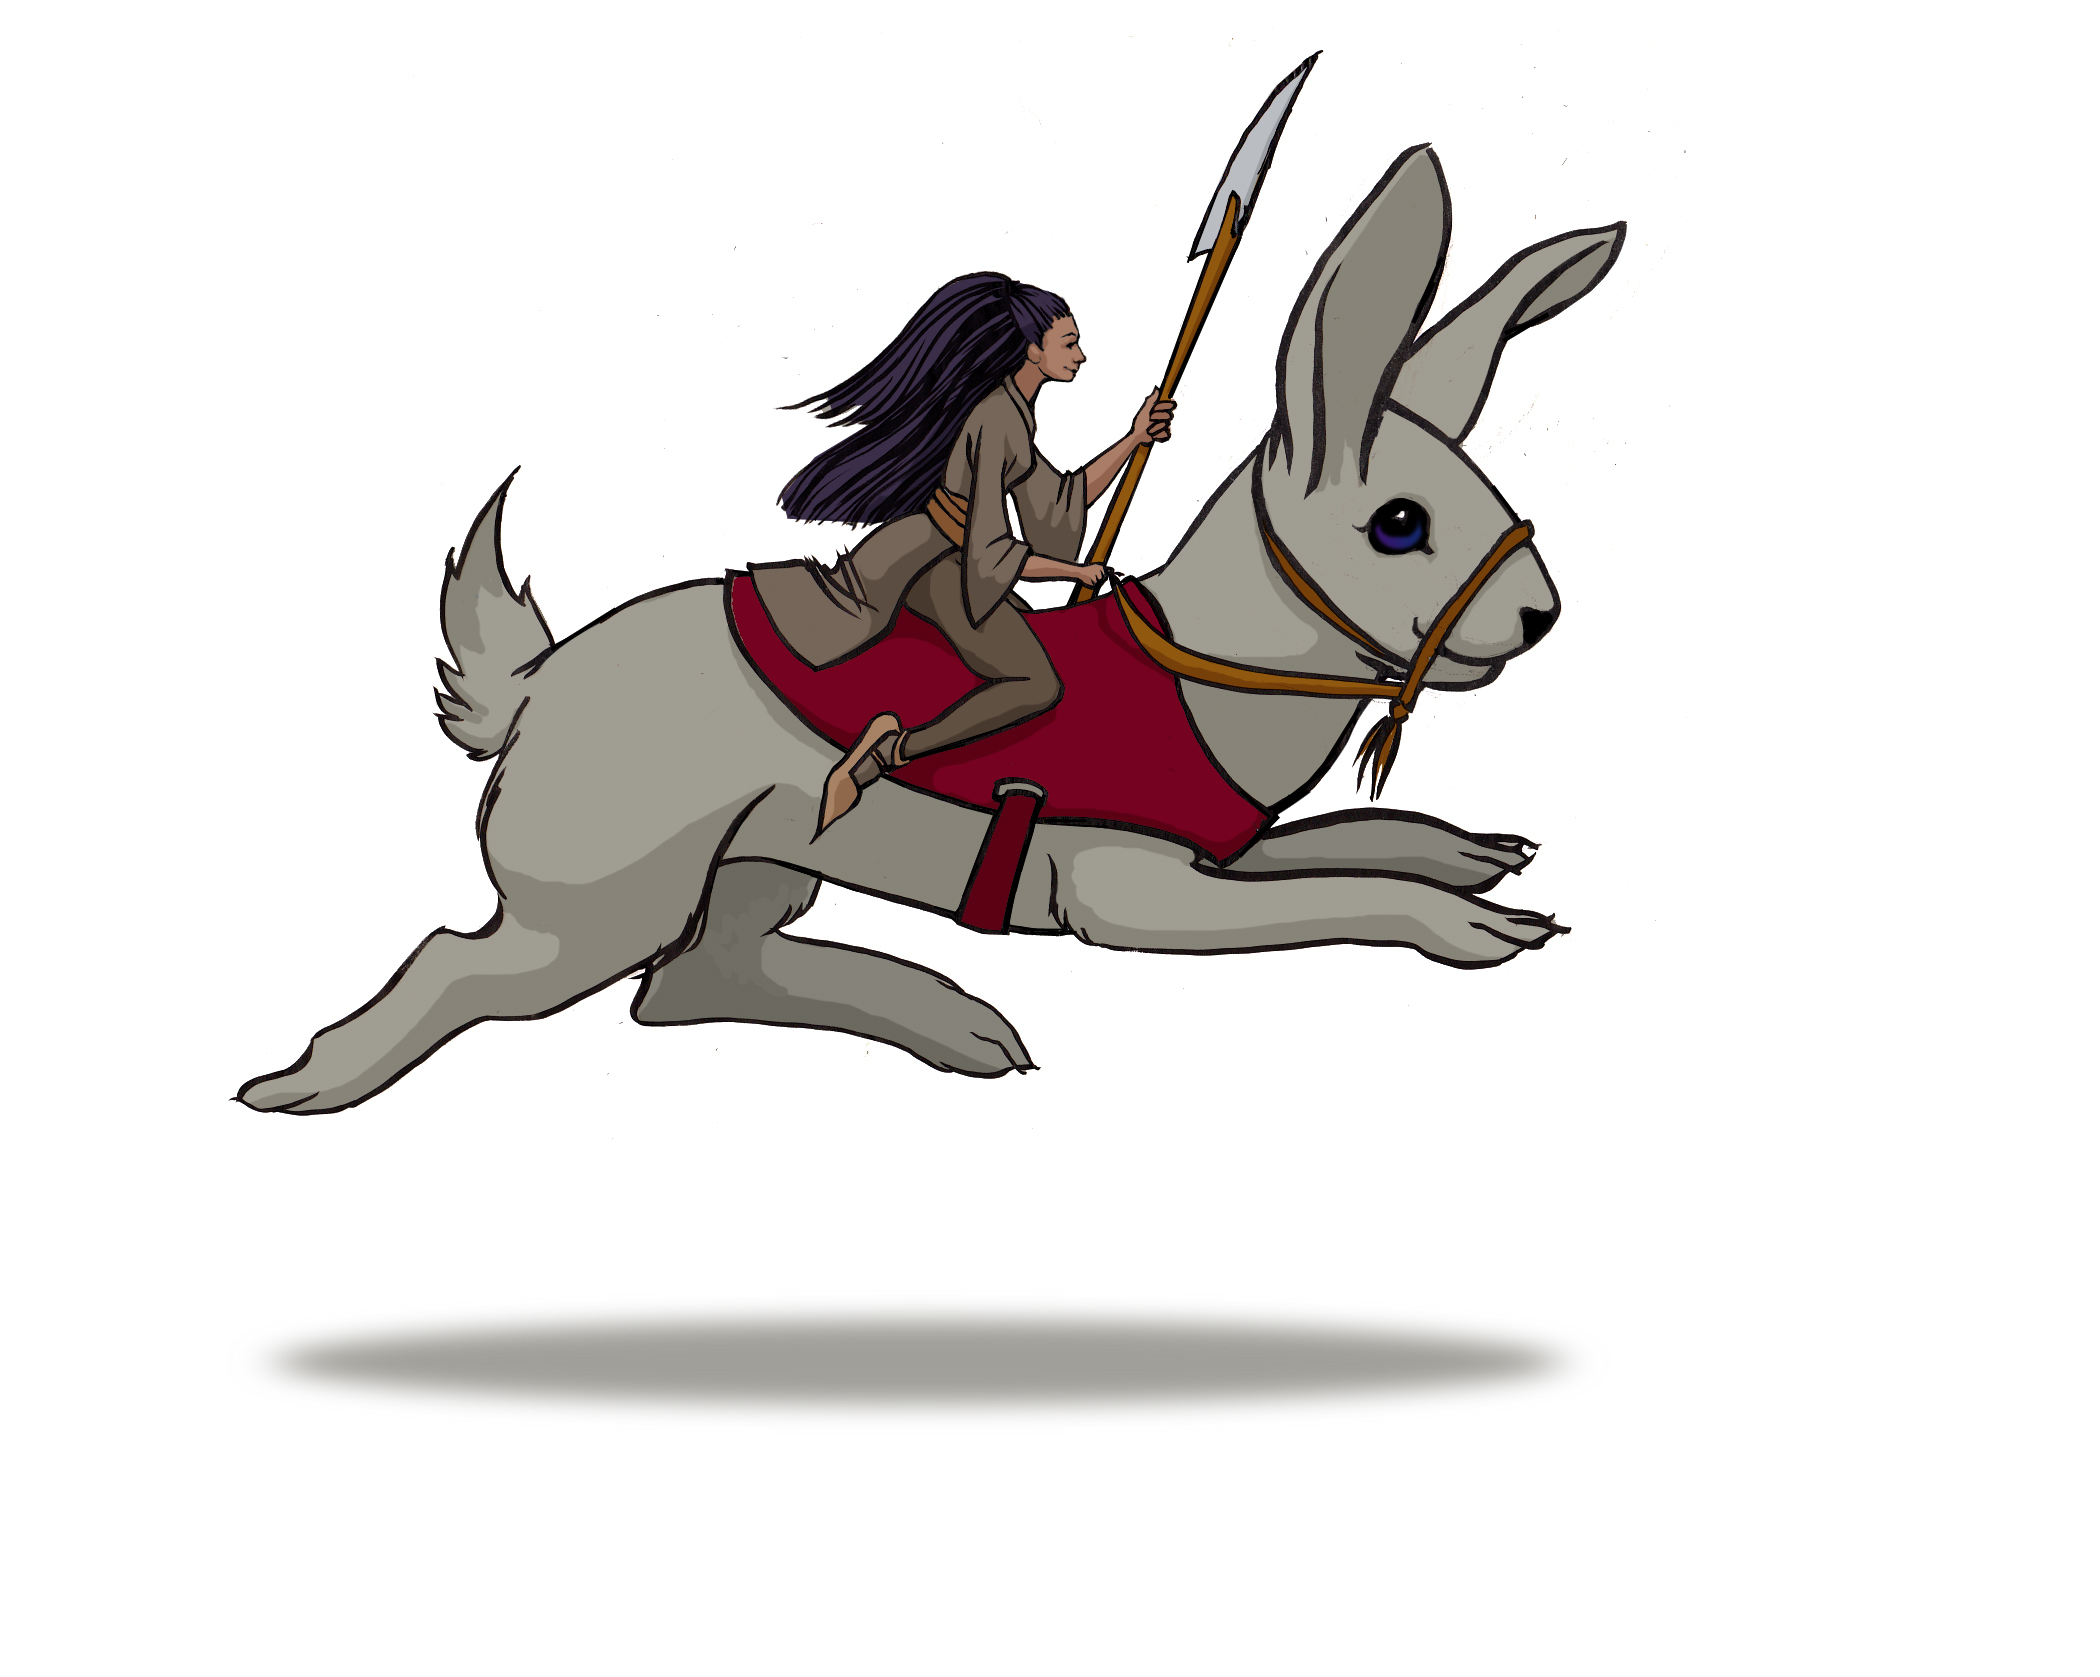 Monk Riding a Rabbit concept